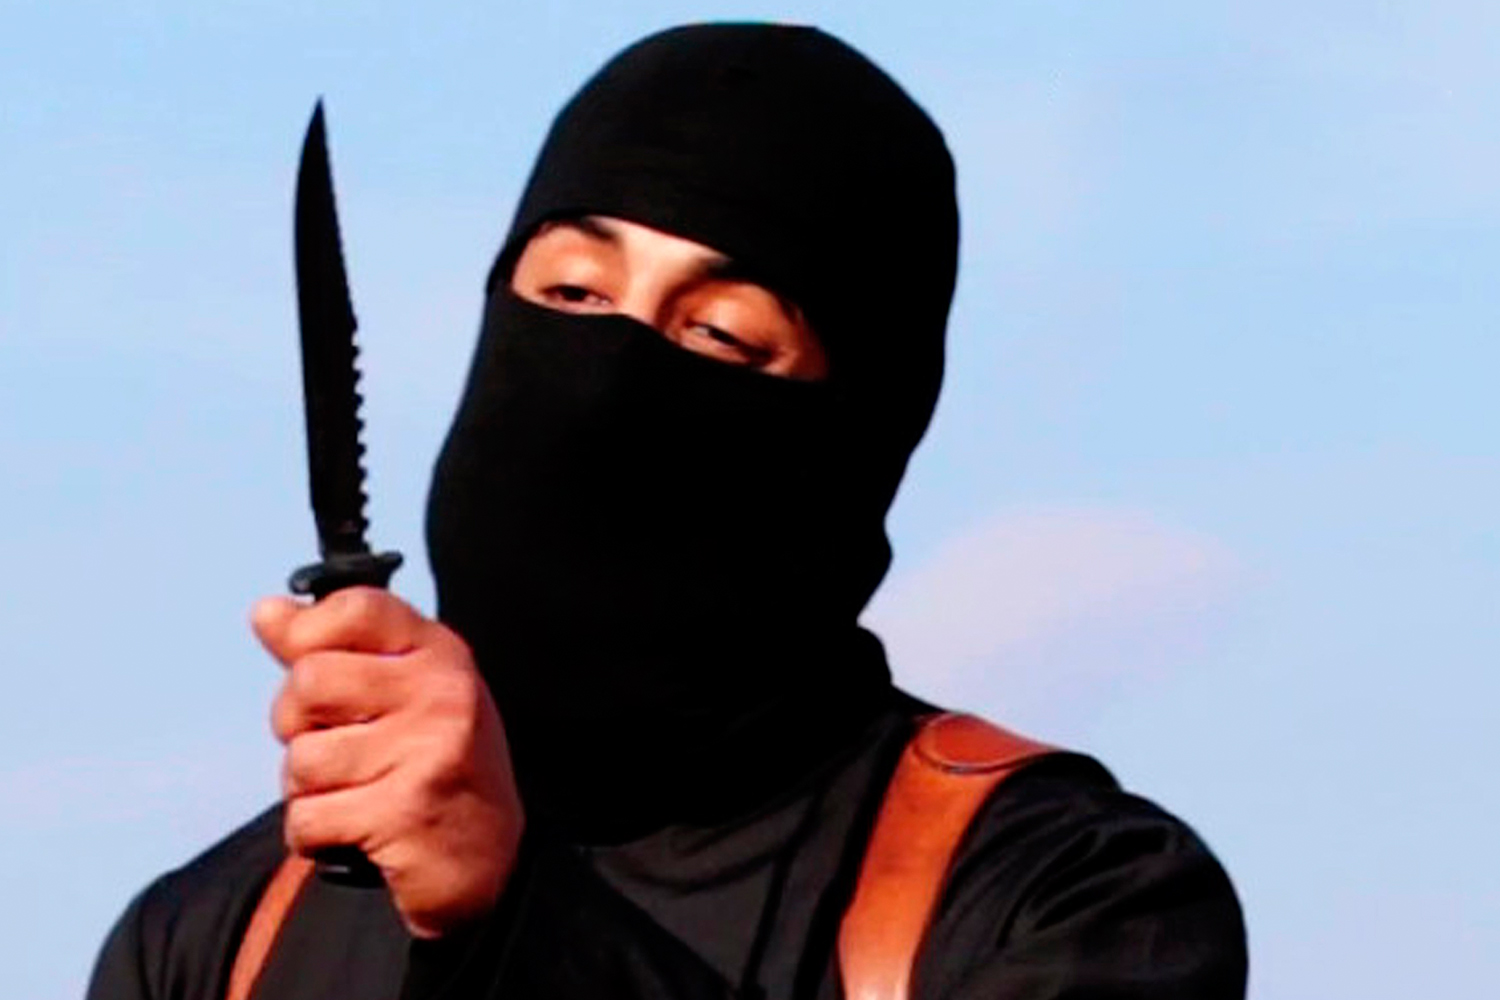 Rastrean al reclutador del ‘yihadista John’ gracias a su cuenta en LinkedIn